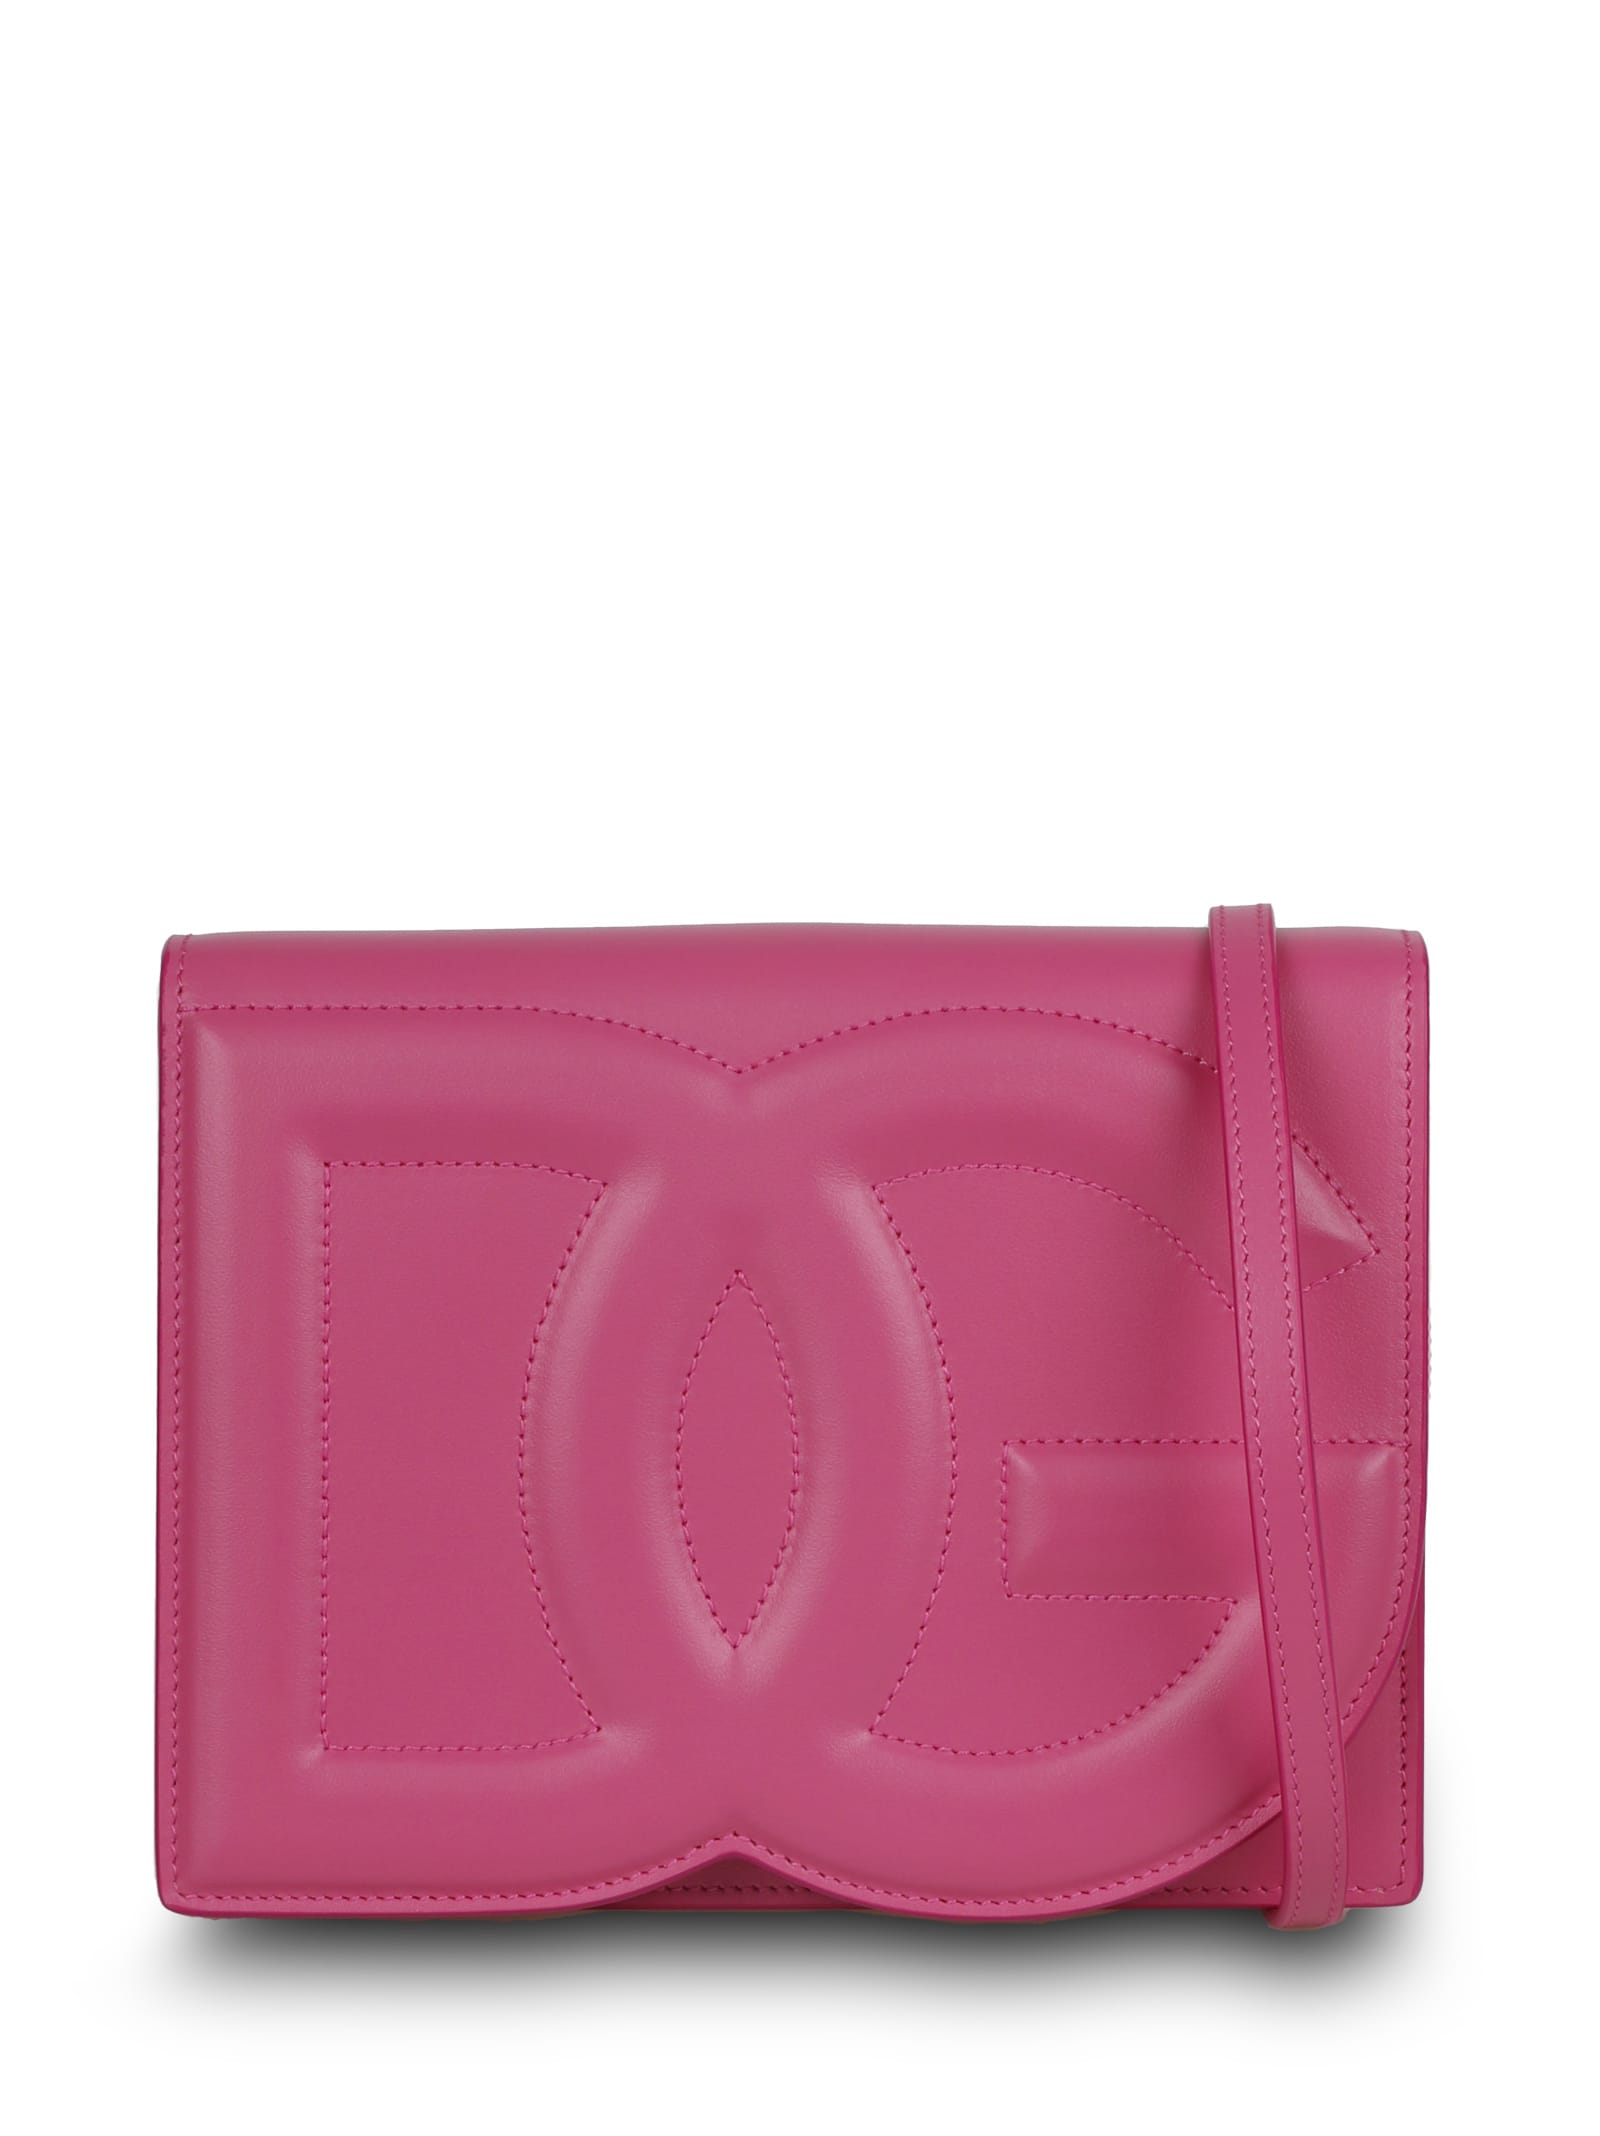 Dolce & Gabbana dg Logo Leather Shoulder Bag